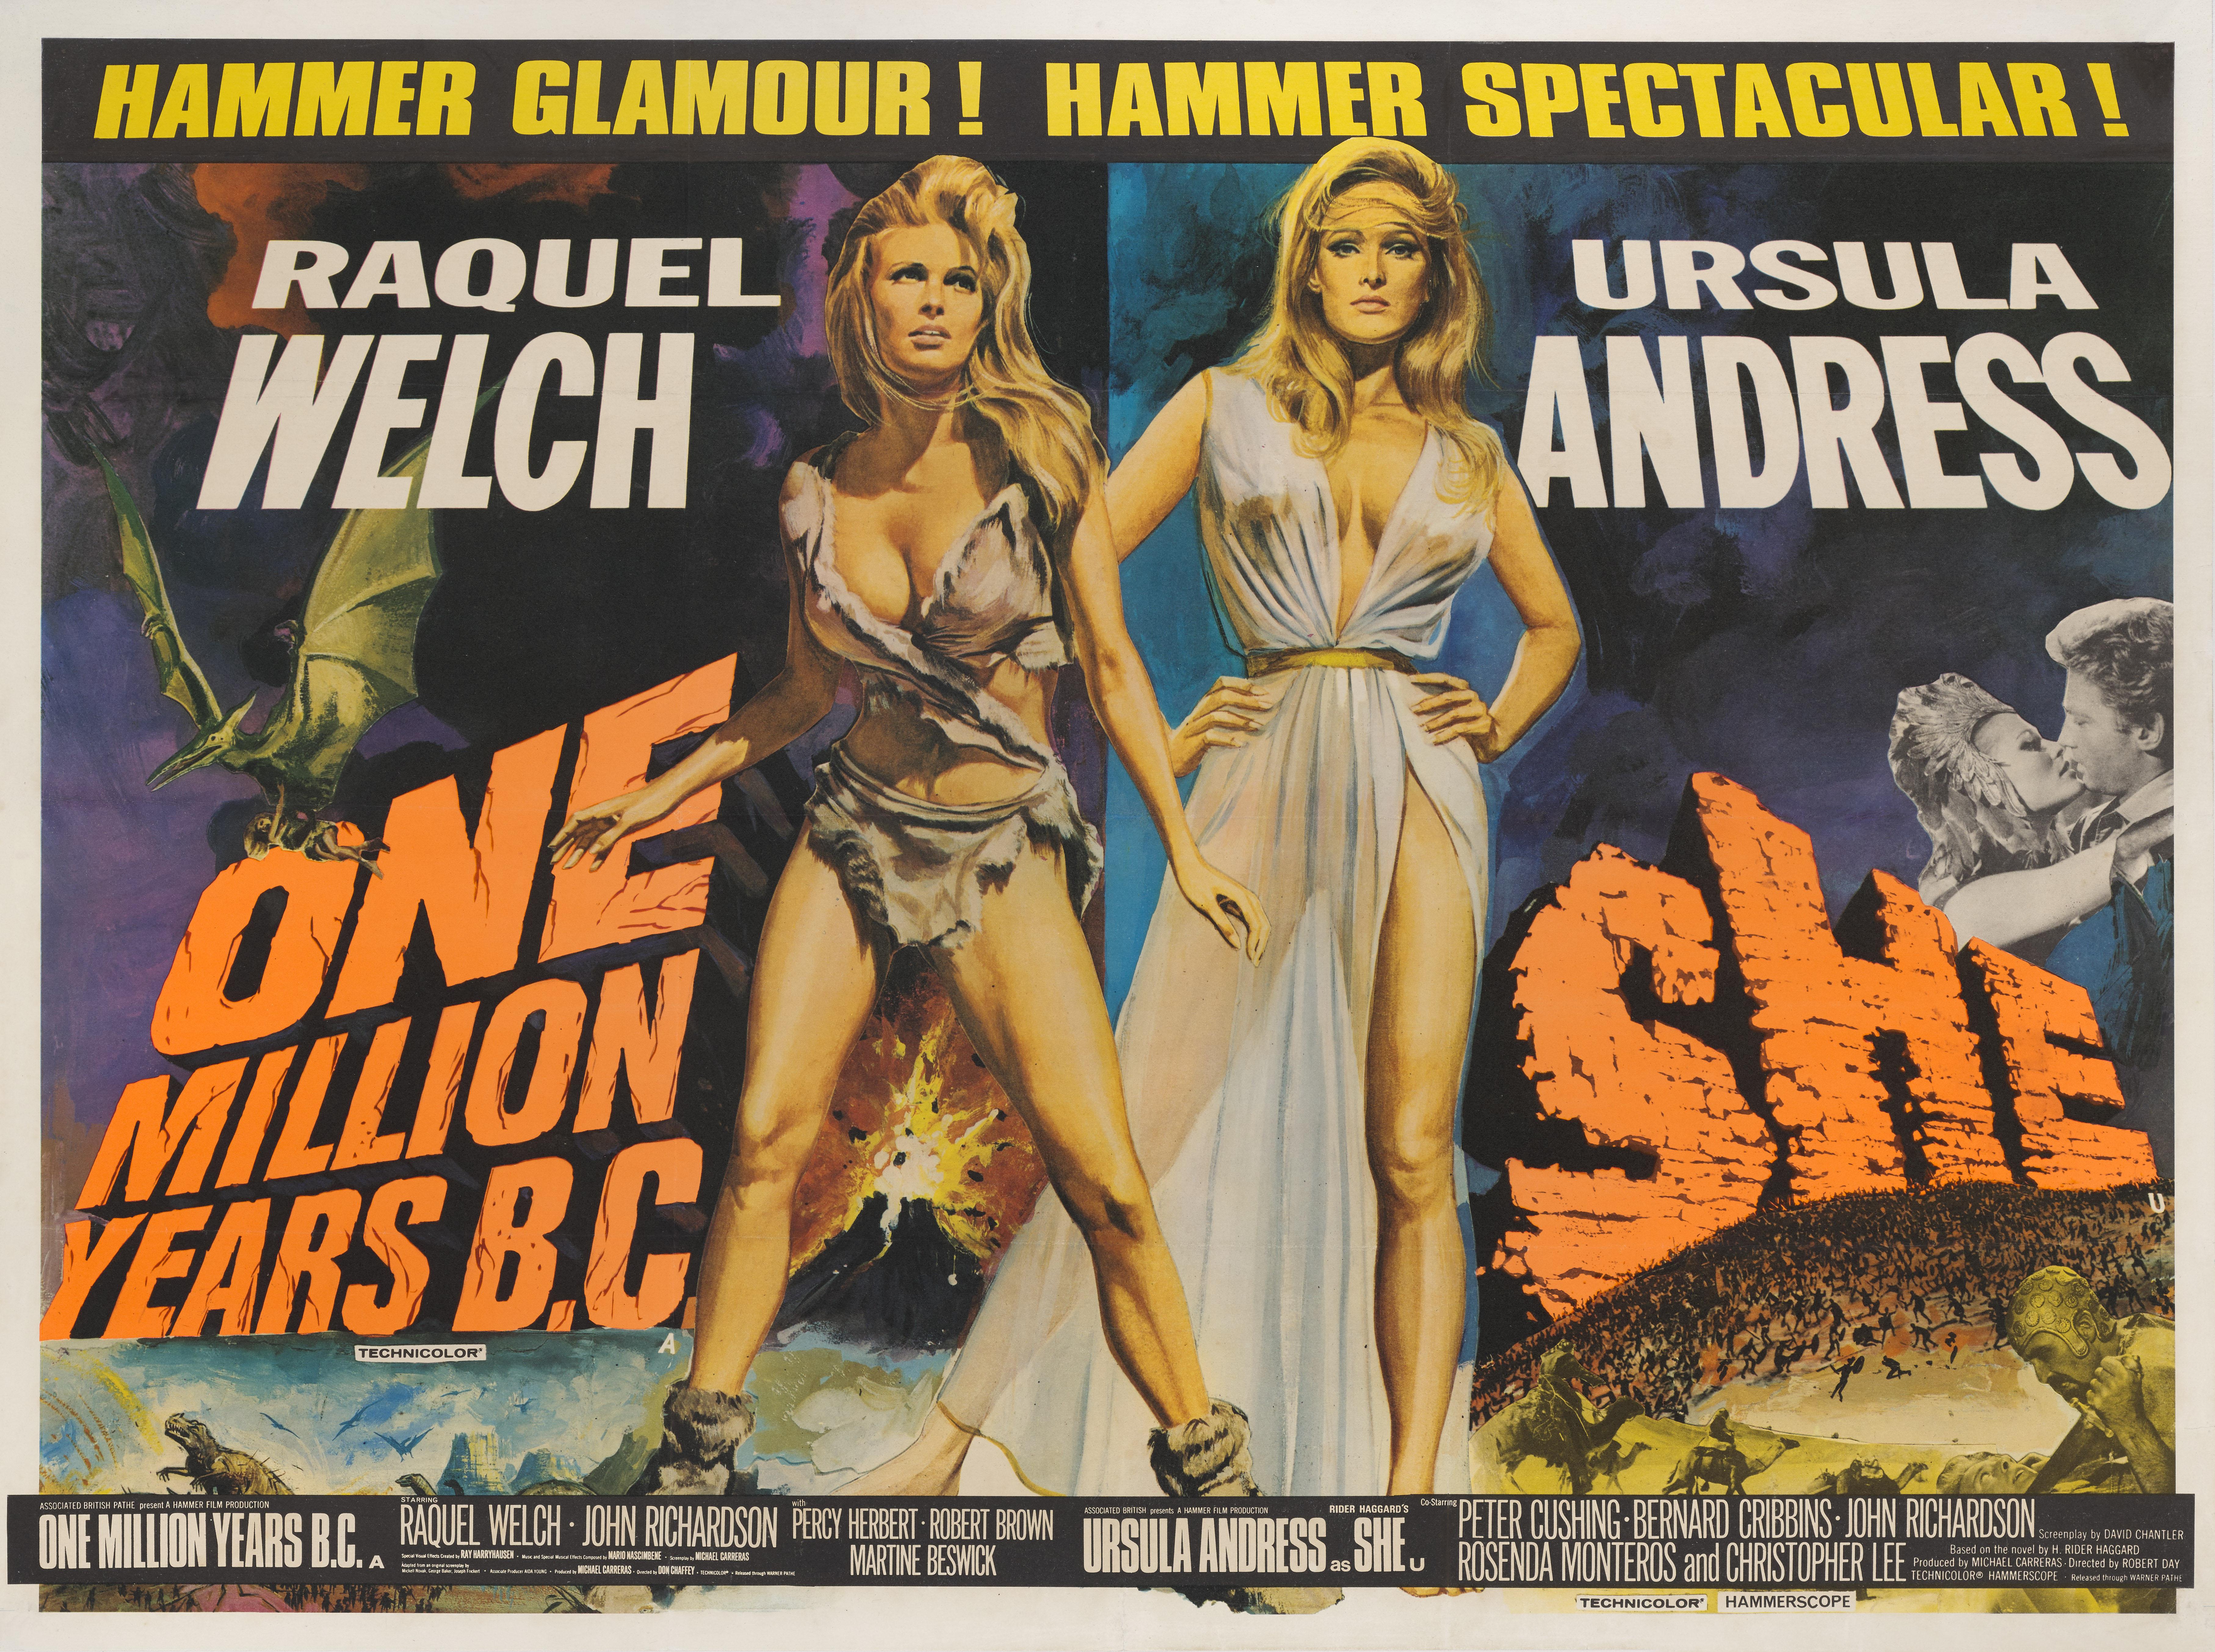 Originales britisches Filmplakat, das für eine Doppelvorstellung von Raquel Welchs Fantasy-Abenteuerfilmen She und One Million Years B.C. aus den Jahren 1965 und 1966 wirbt.